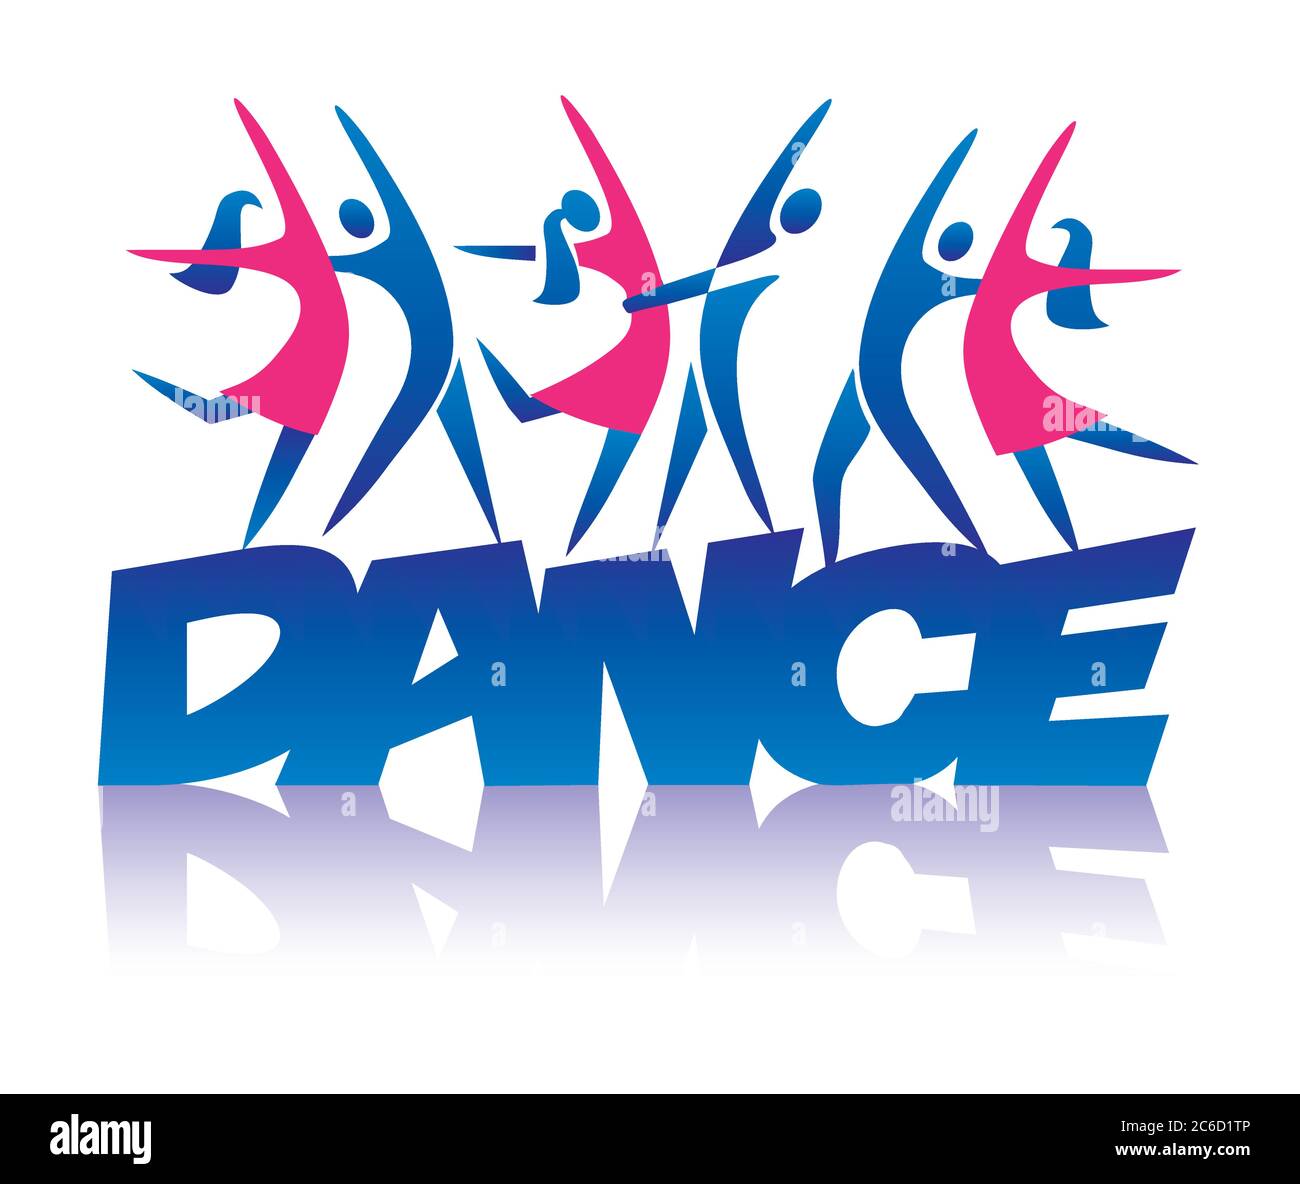 Coppie danzanti su ISCRIZIONE DI BALLO. Illustrazione stilizzata di tre coppie di ballo. Isolato su sfondo bianco. Vettore disponibile. Illustrazione Vettoriale